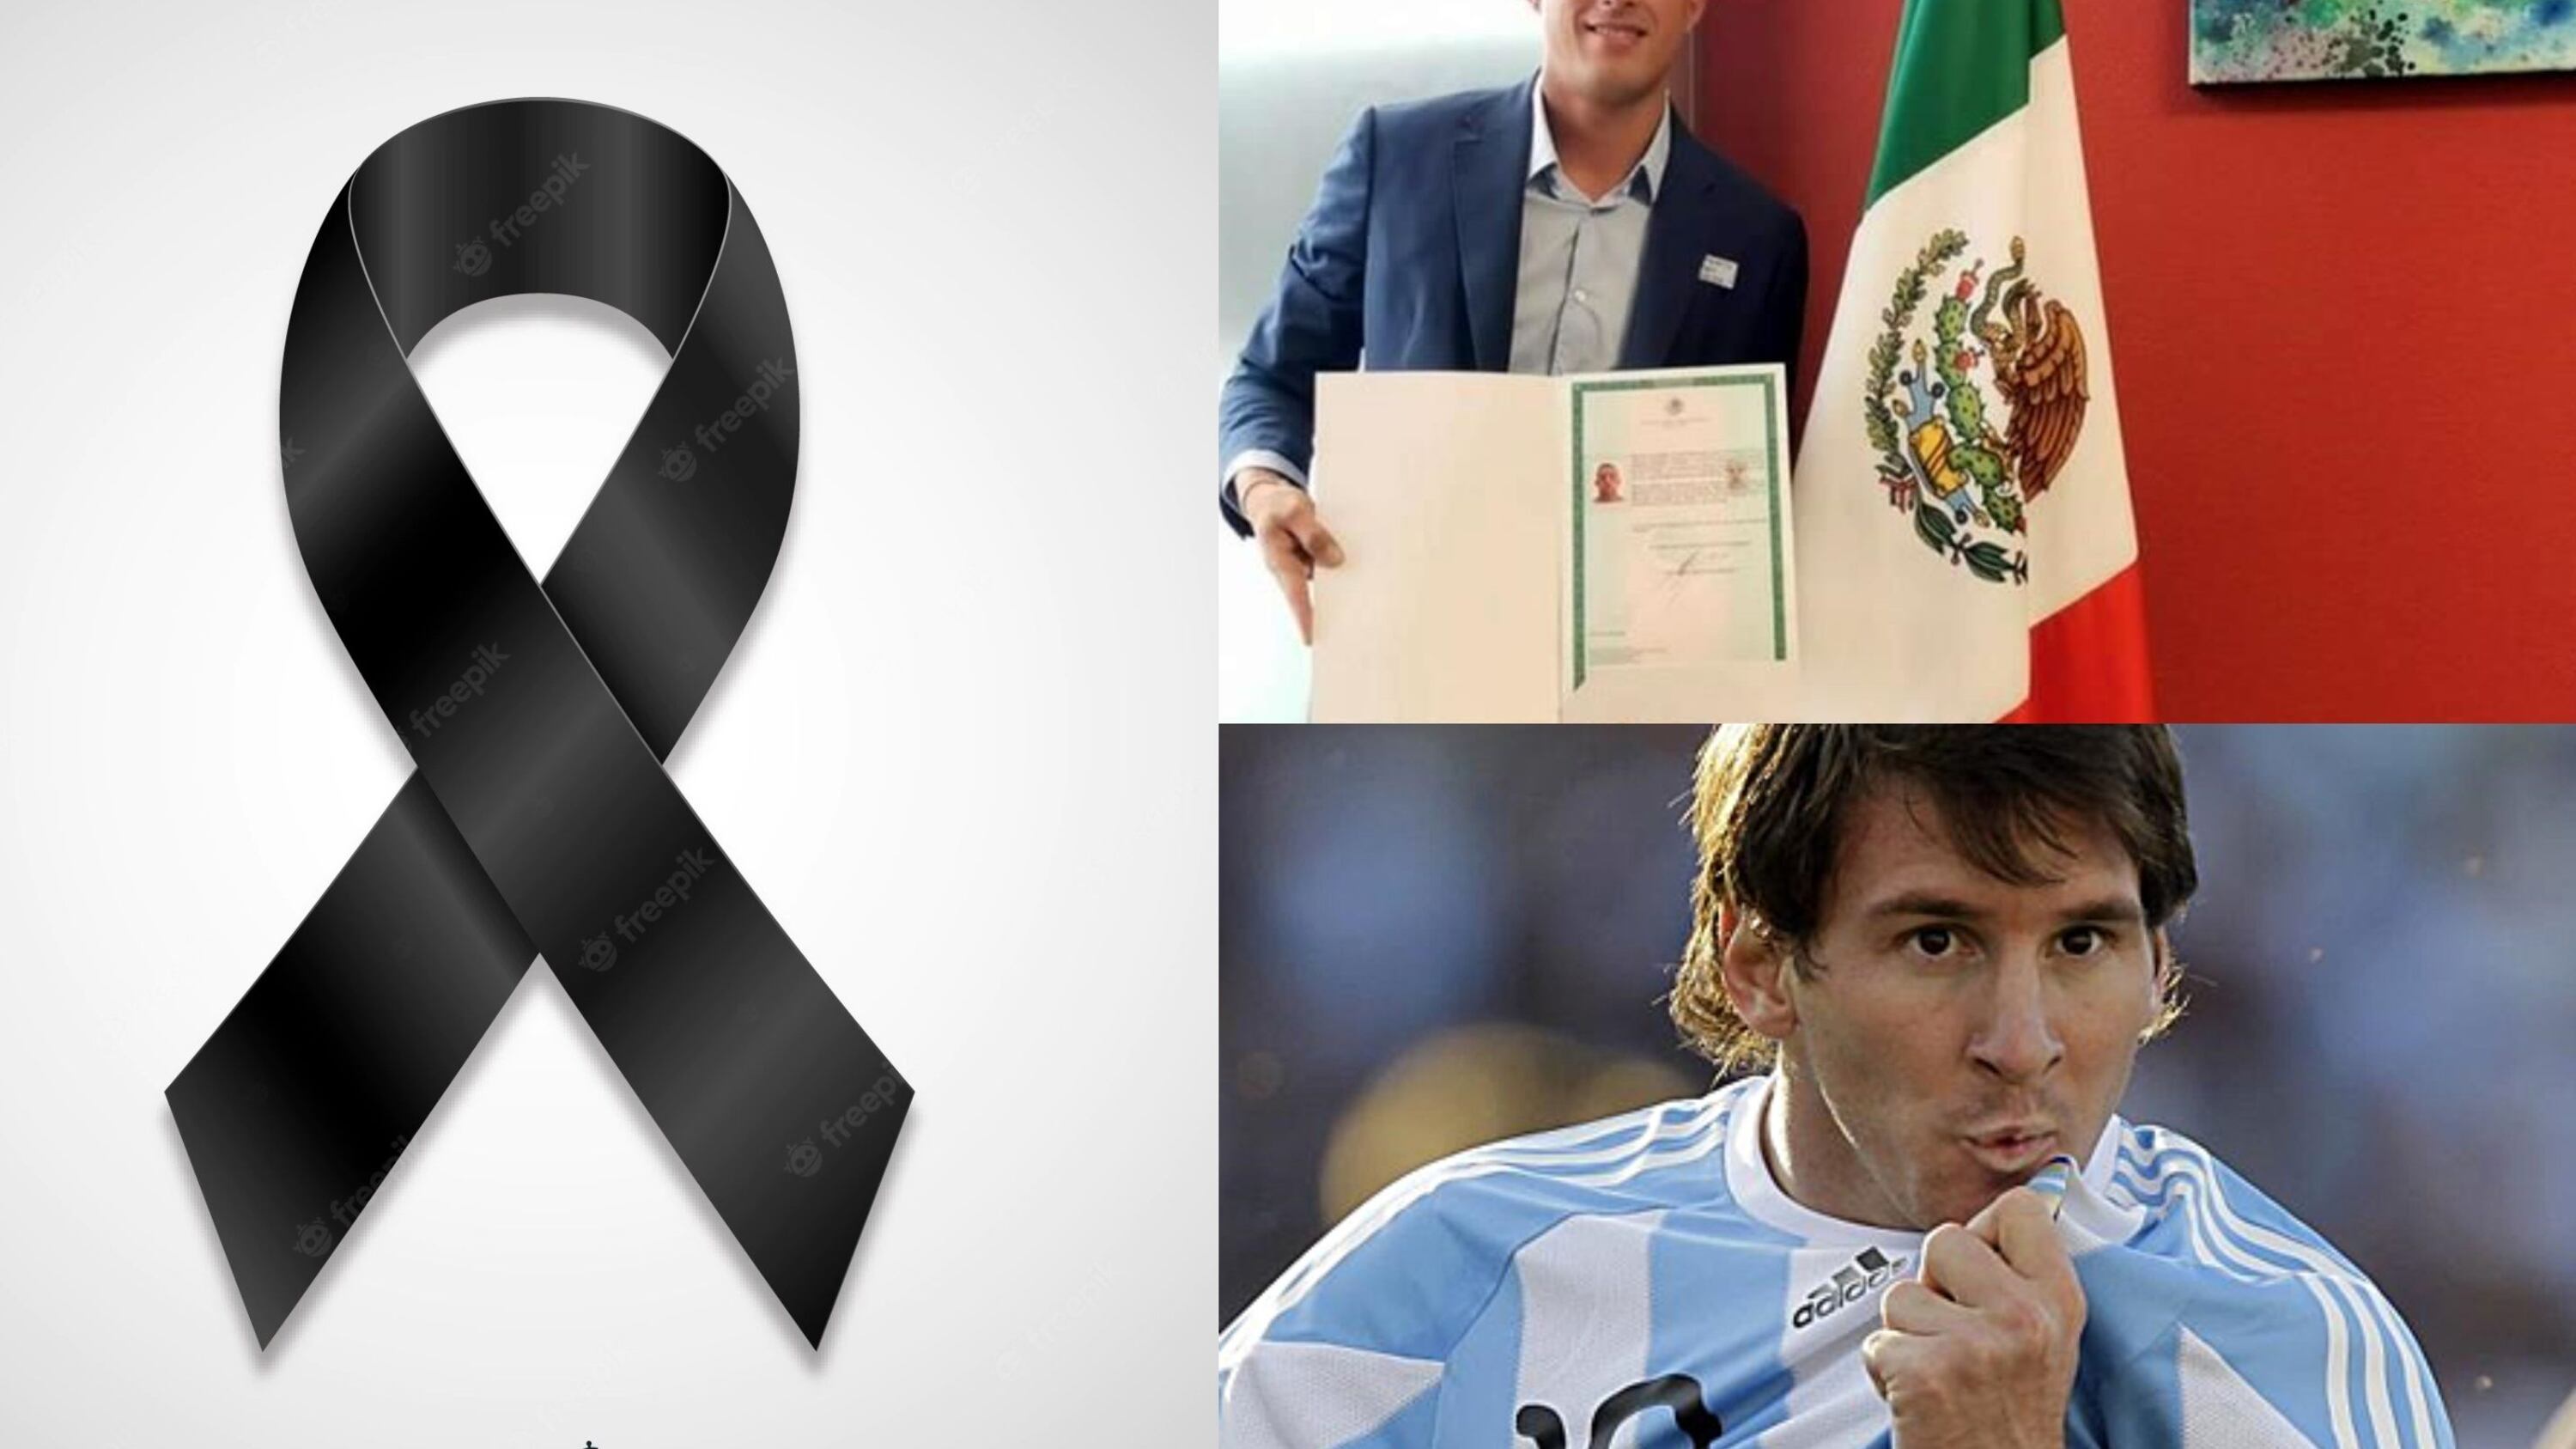 El argentino que se naturalizó mexicano y fue goleador, ahora pierde la vida